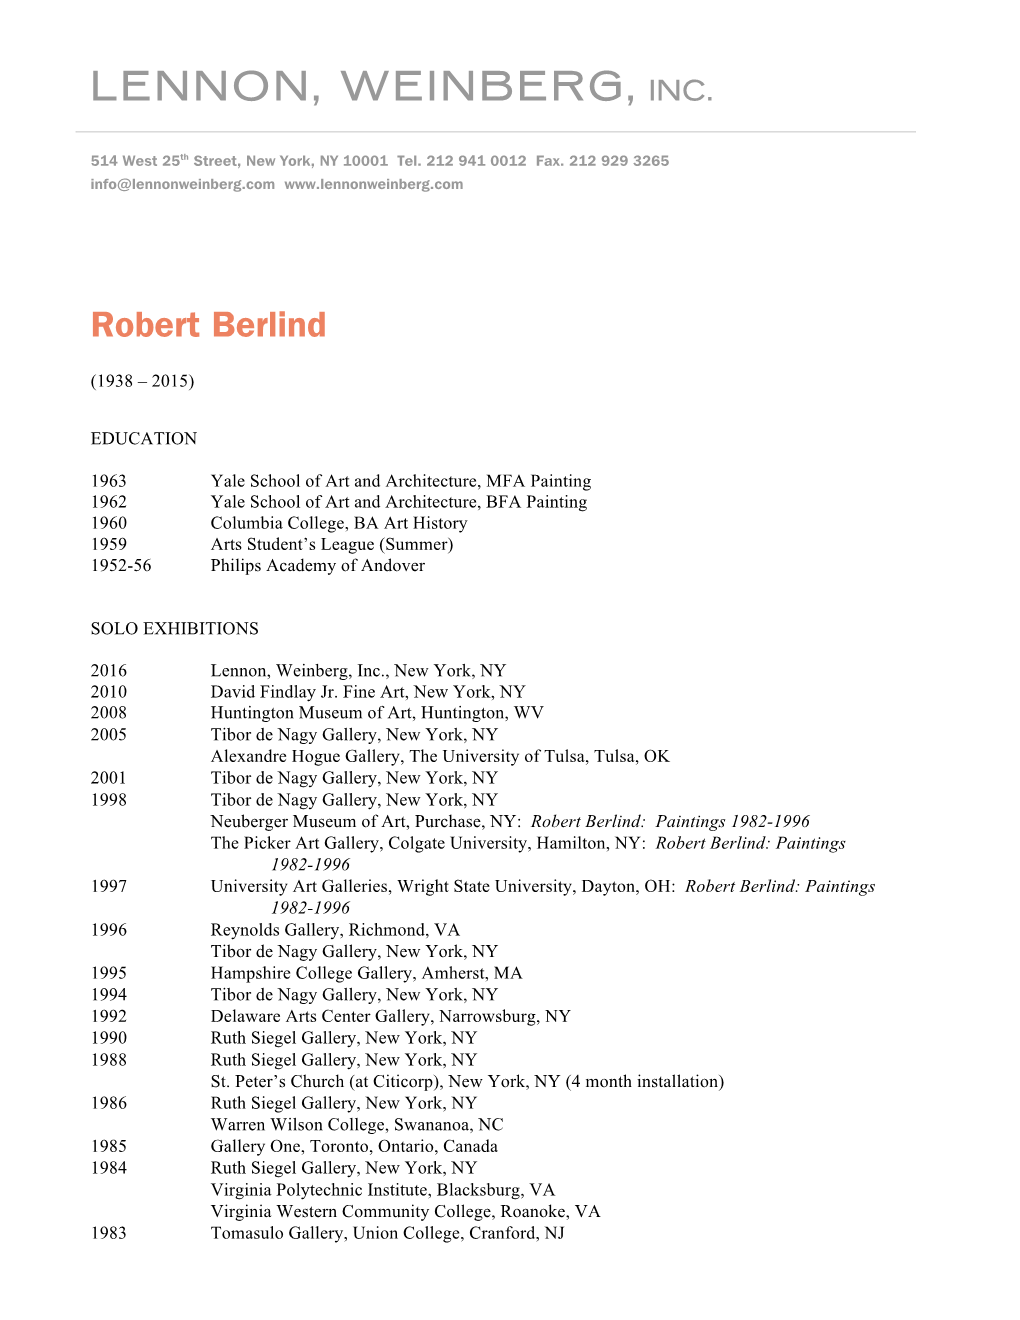 Robert Berlind